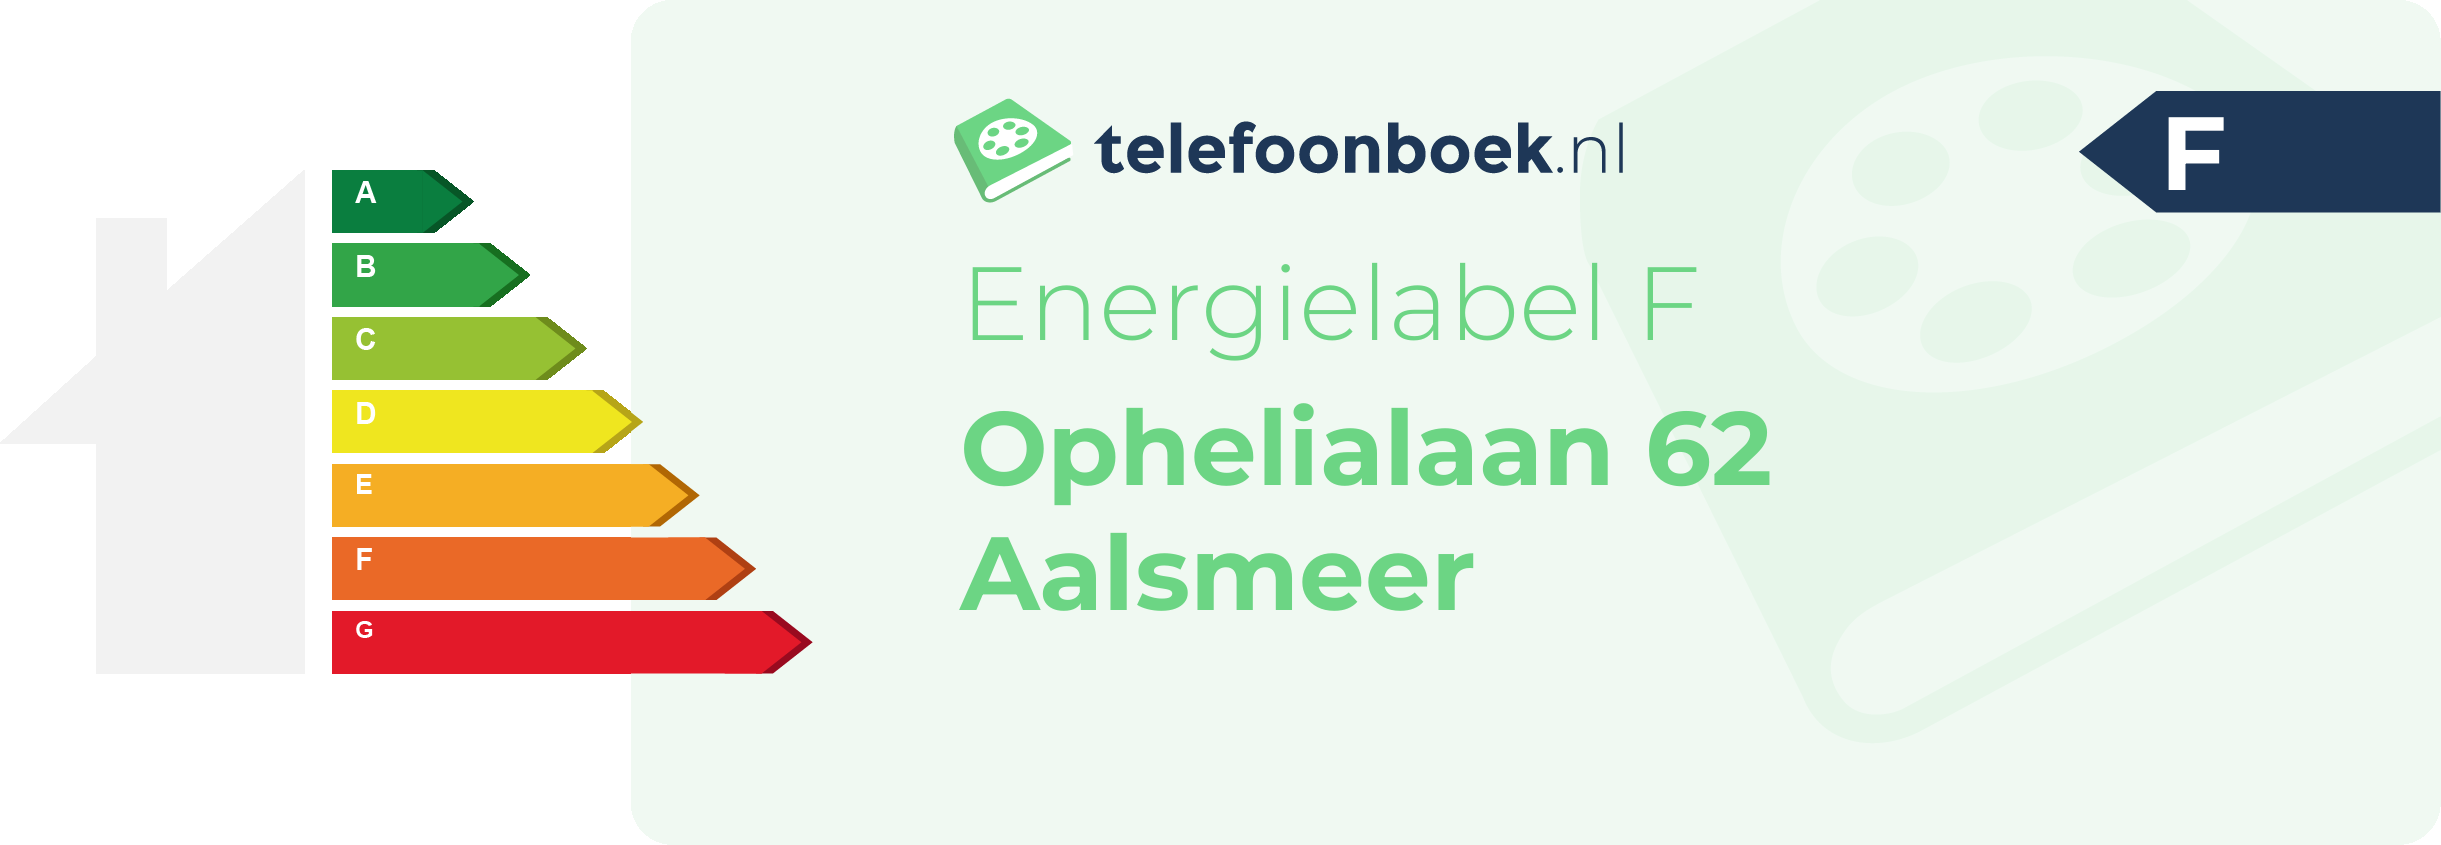 Energielabel Ophelialaan 62 Aalsmeer